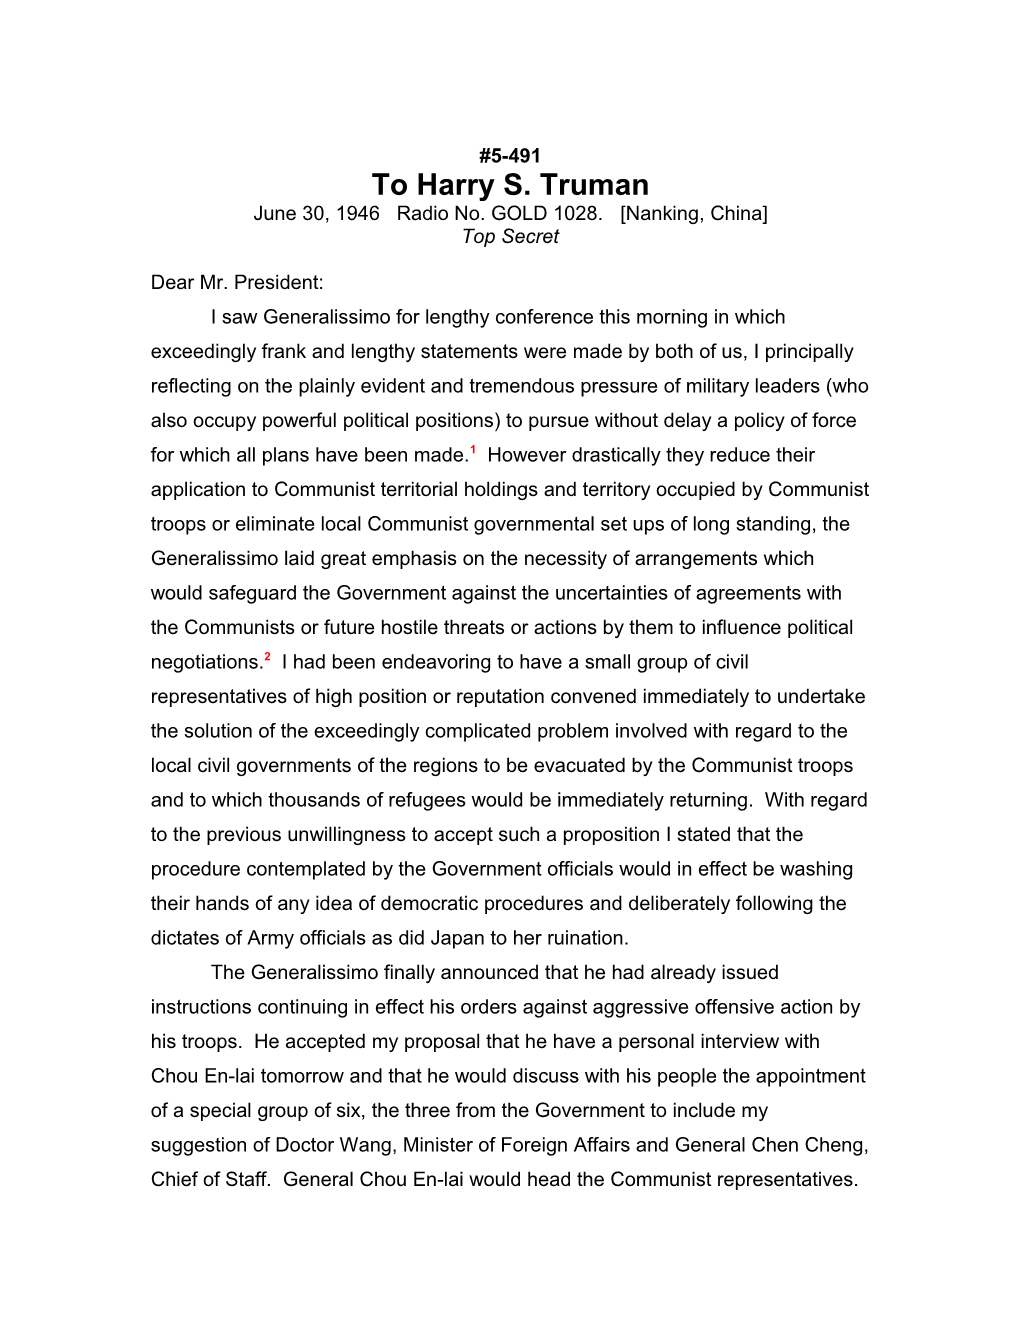 To Harry S. Truman